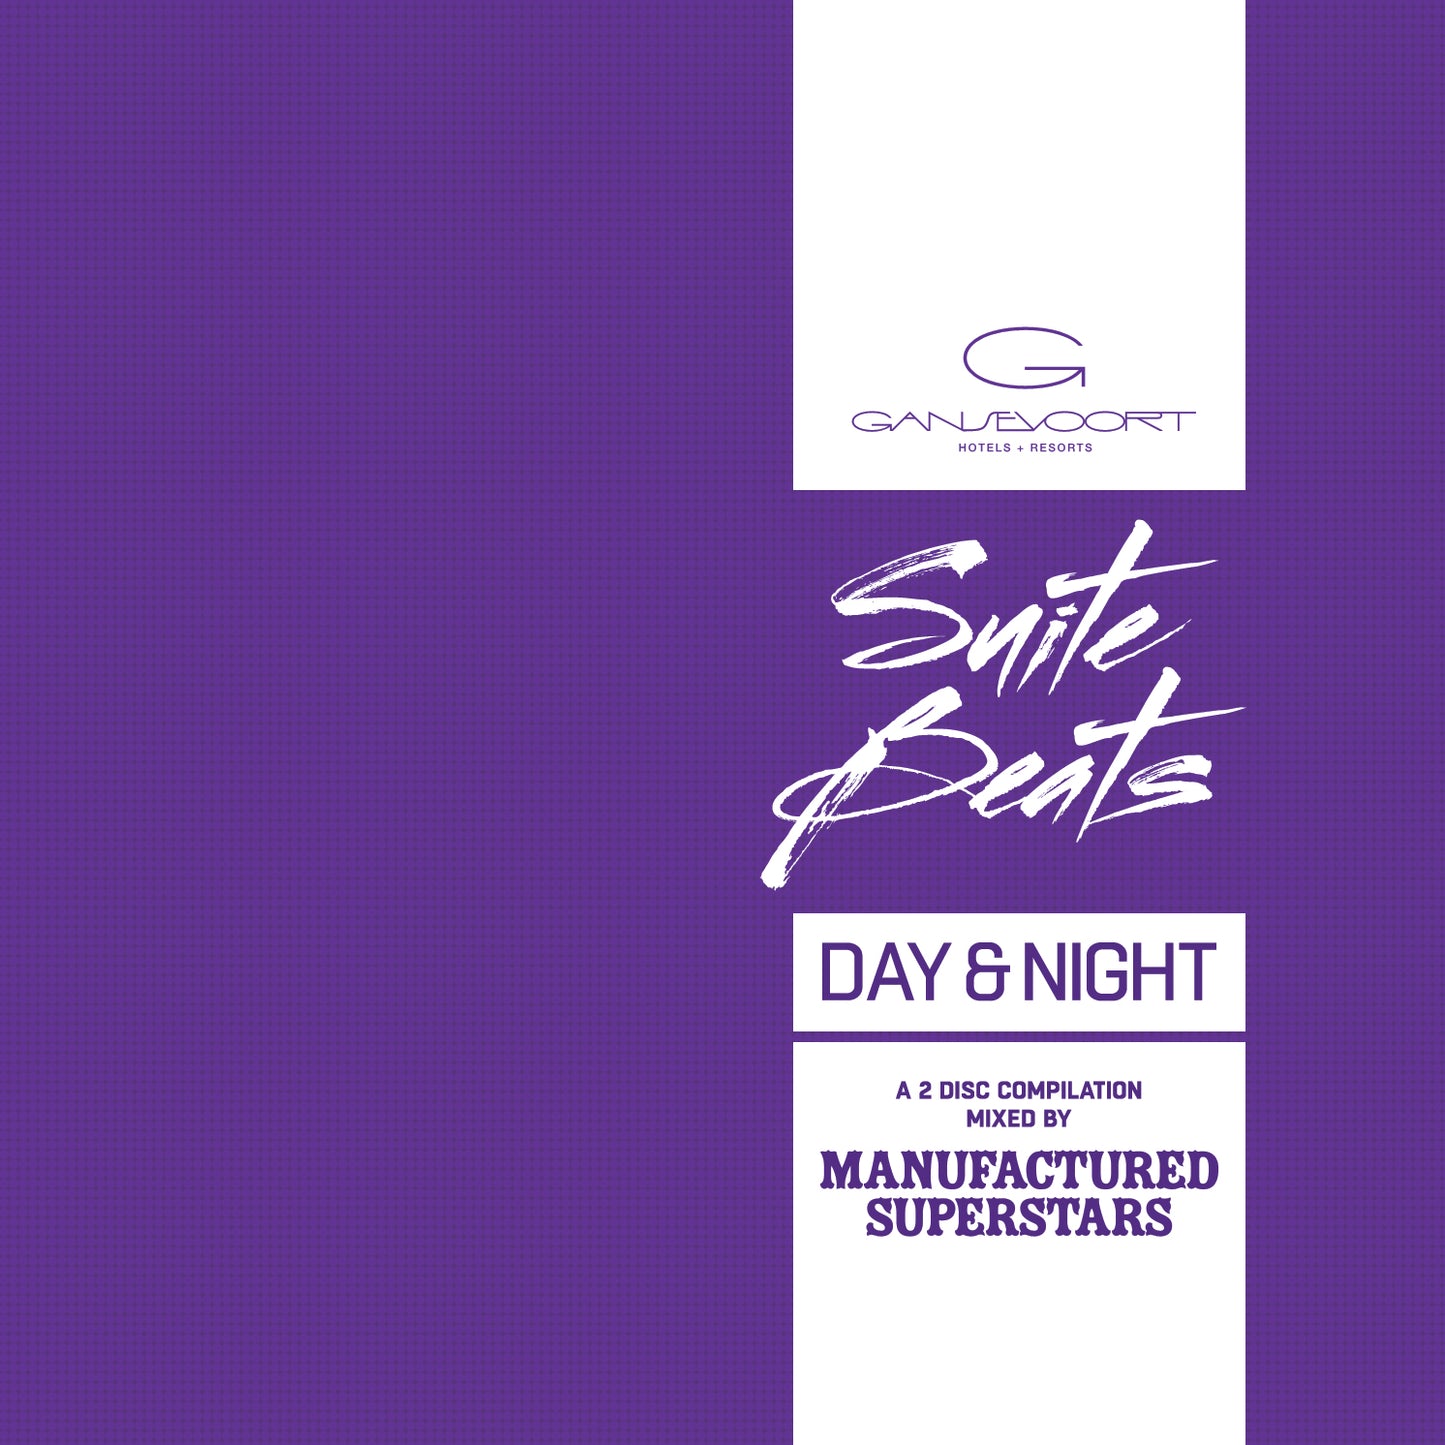 Gansevoort Presents Manufactured Superstars ‘Suite Beats’